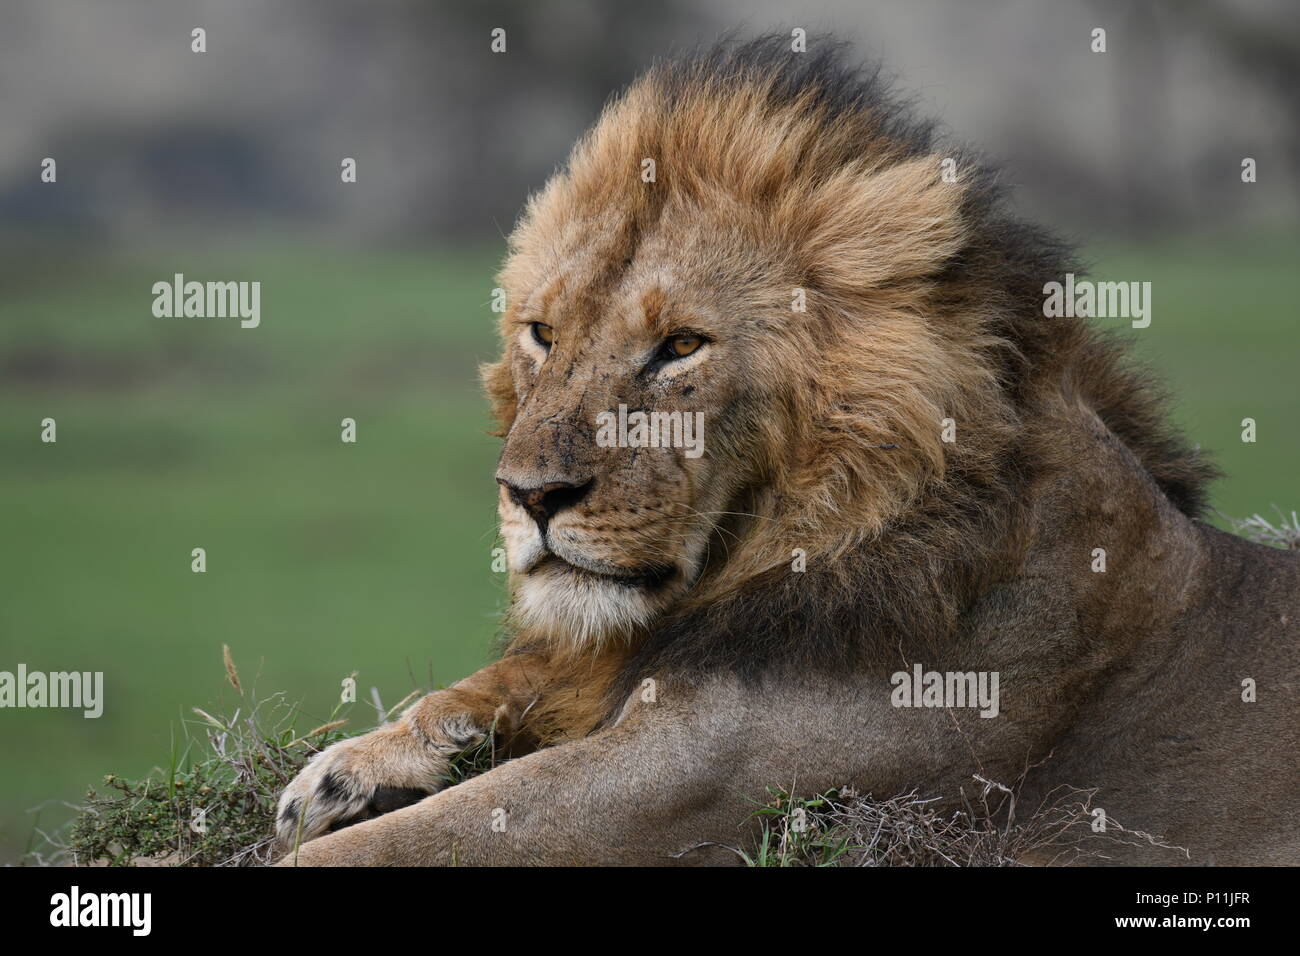 Leone maschio in appoggio sul Massai Mara plains (Panthera leo). Safari del Kenya, la foto è stata scattata nella zona di Olare Motorogi Conservancy. Foto Stock